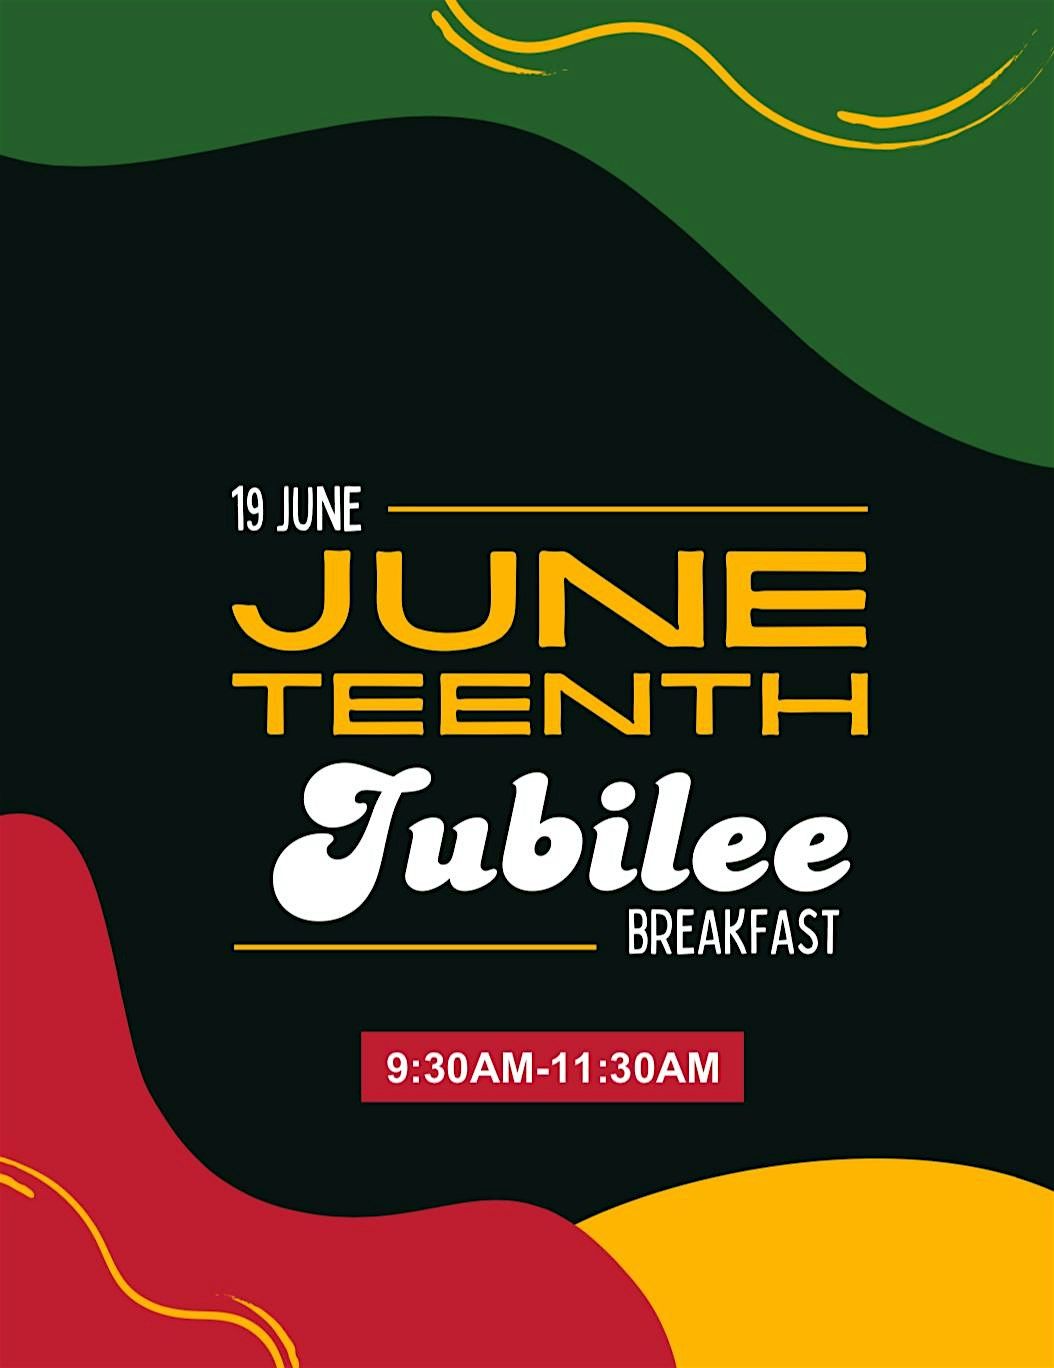 Juneteenth Jubilee Breakfast